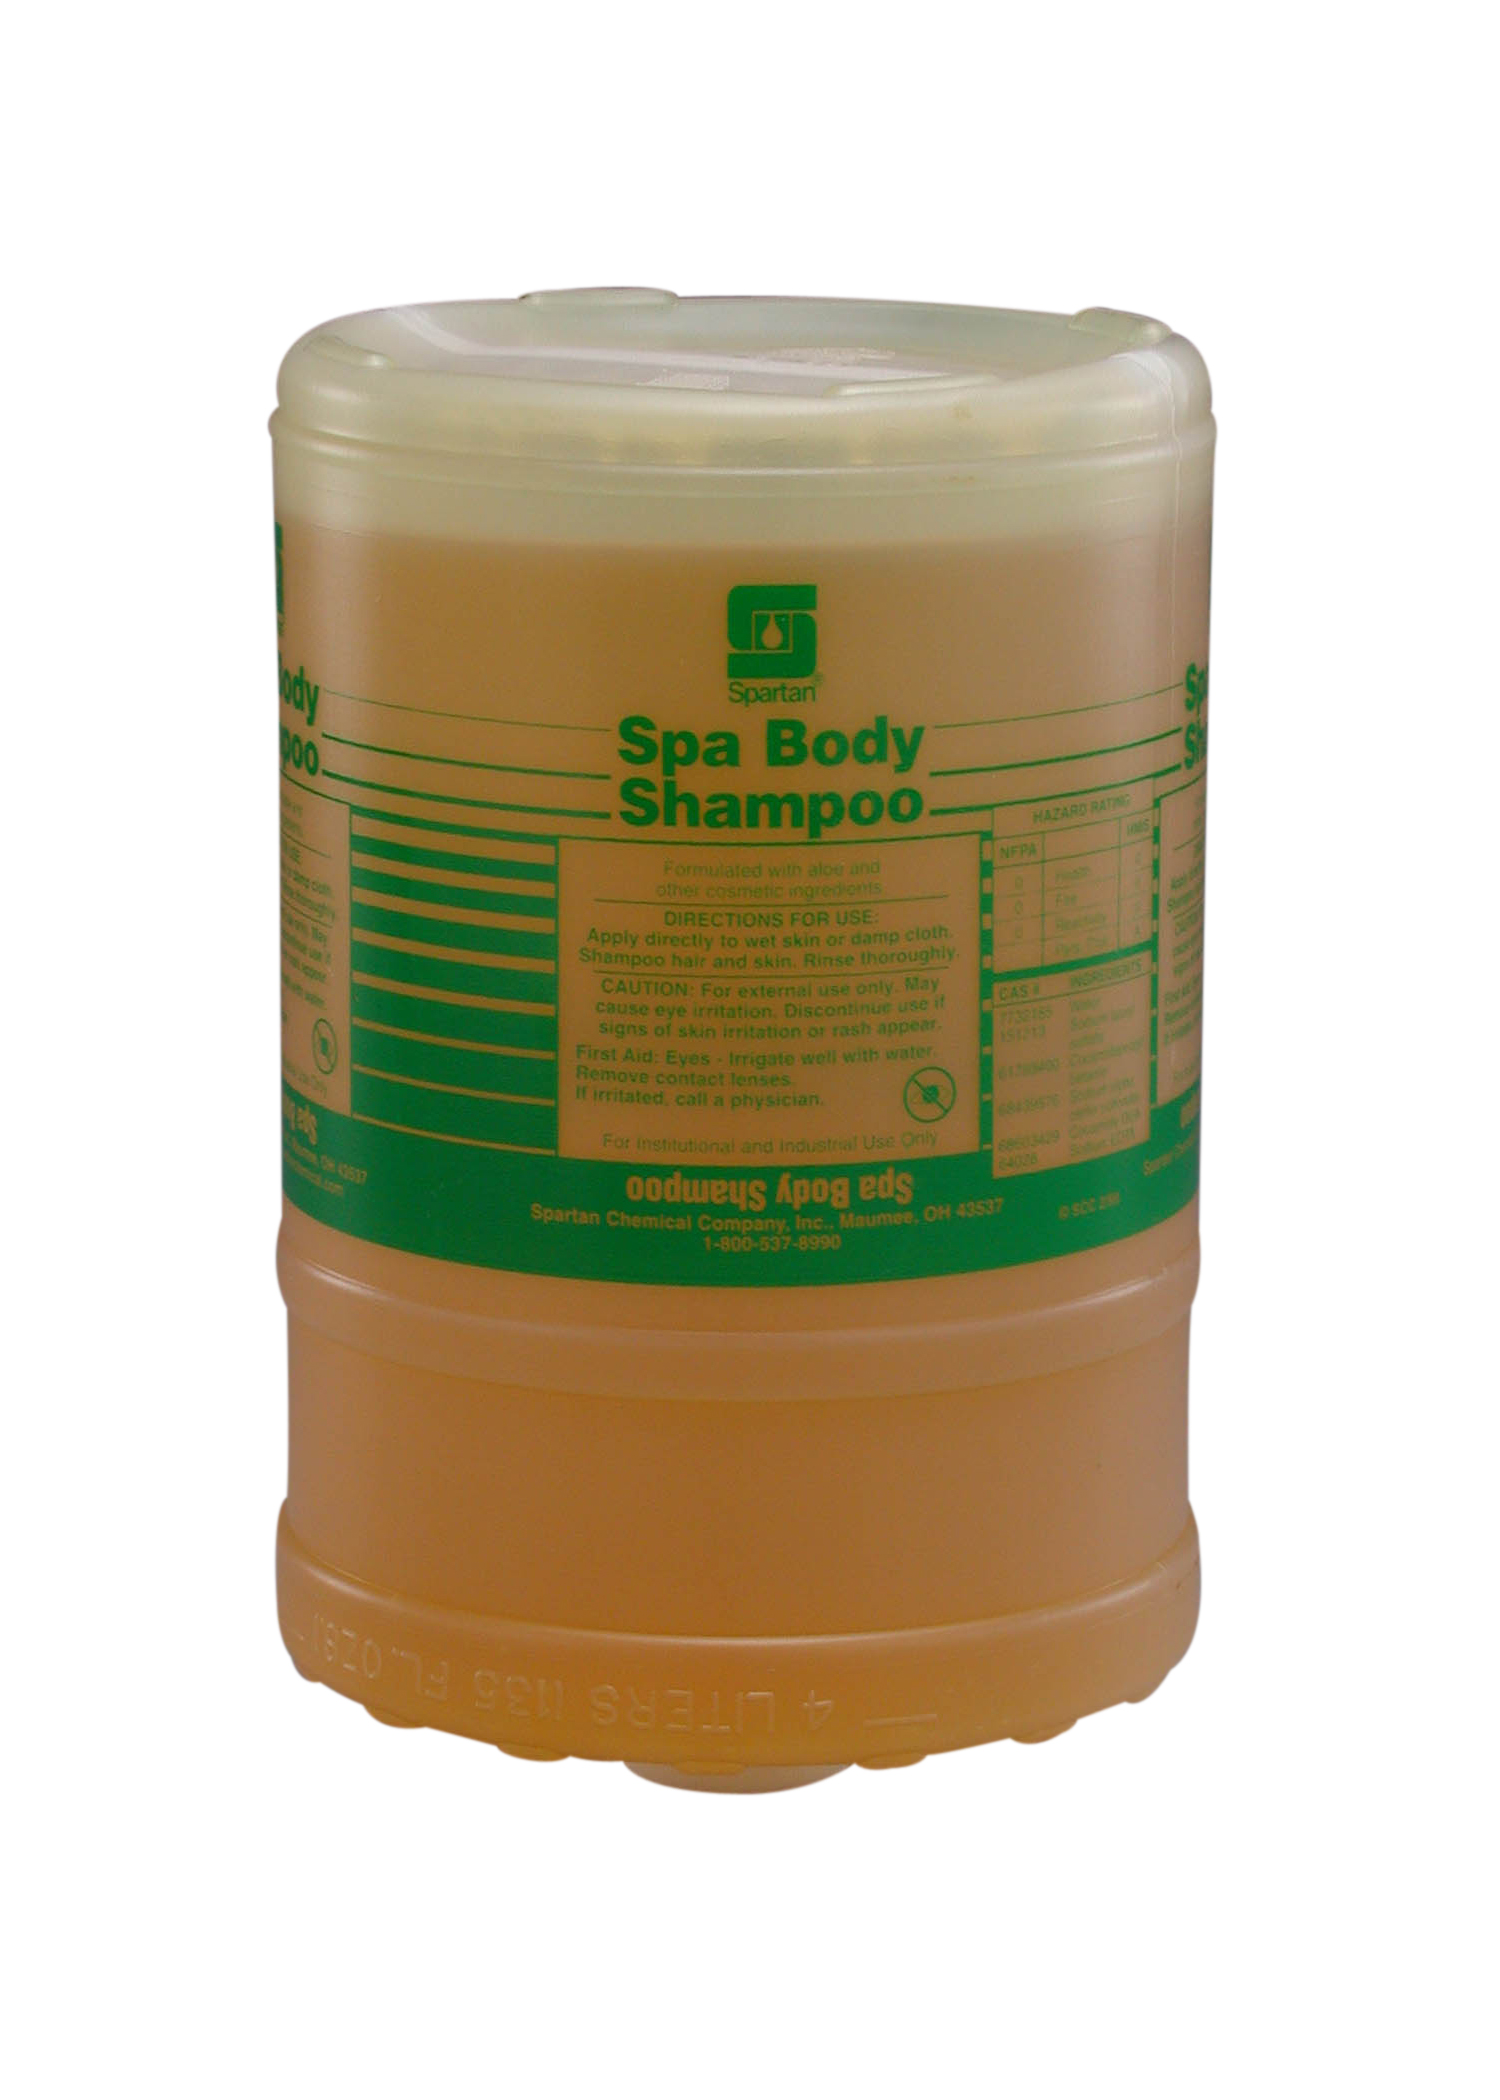 Spa Body Shampoo (Flat Top) 1 gallon (4 per case)